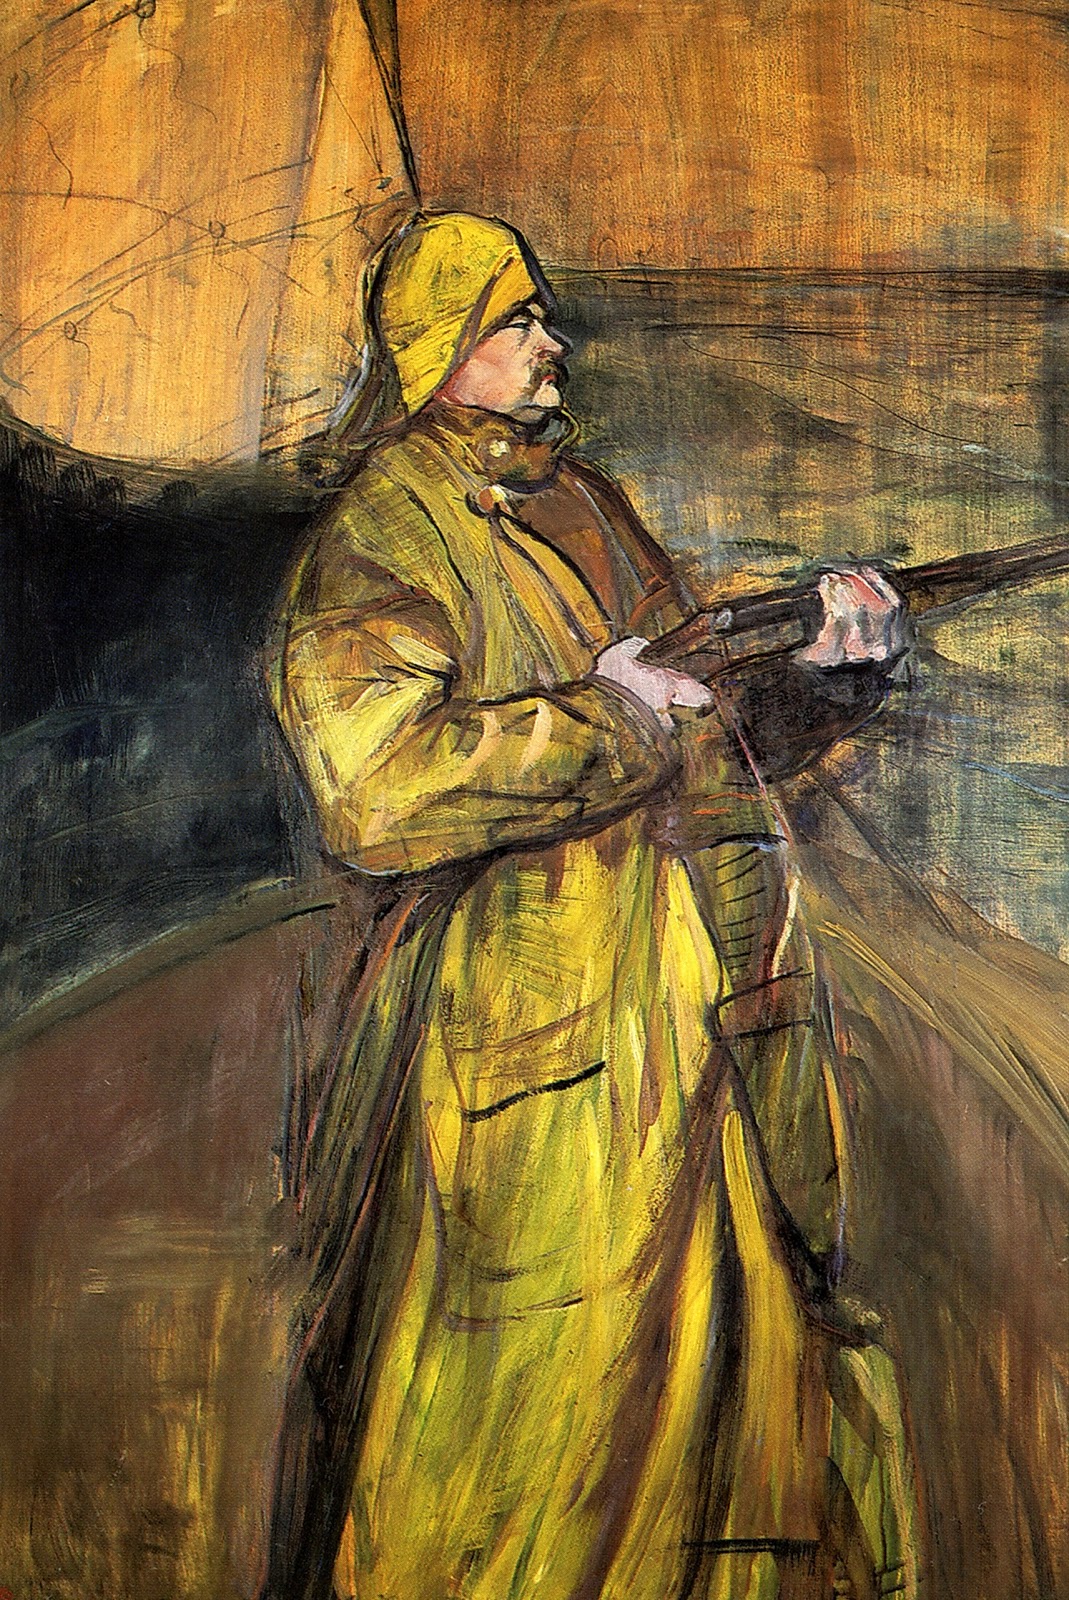 Henri+de+Toulouse+Lautrec-1864-1901 (94).jpg